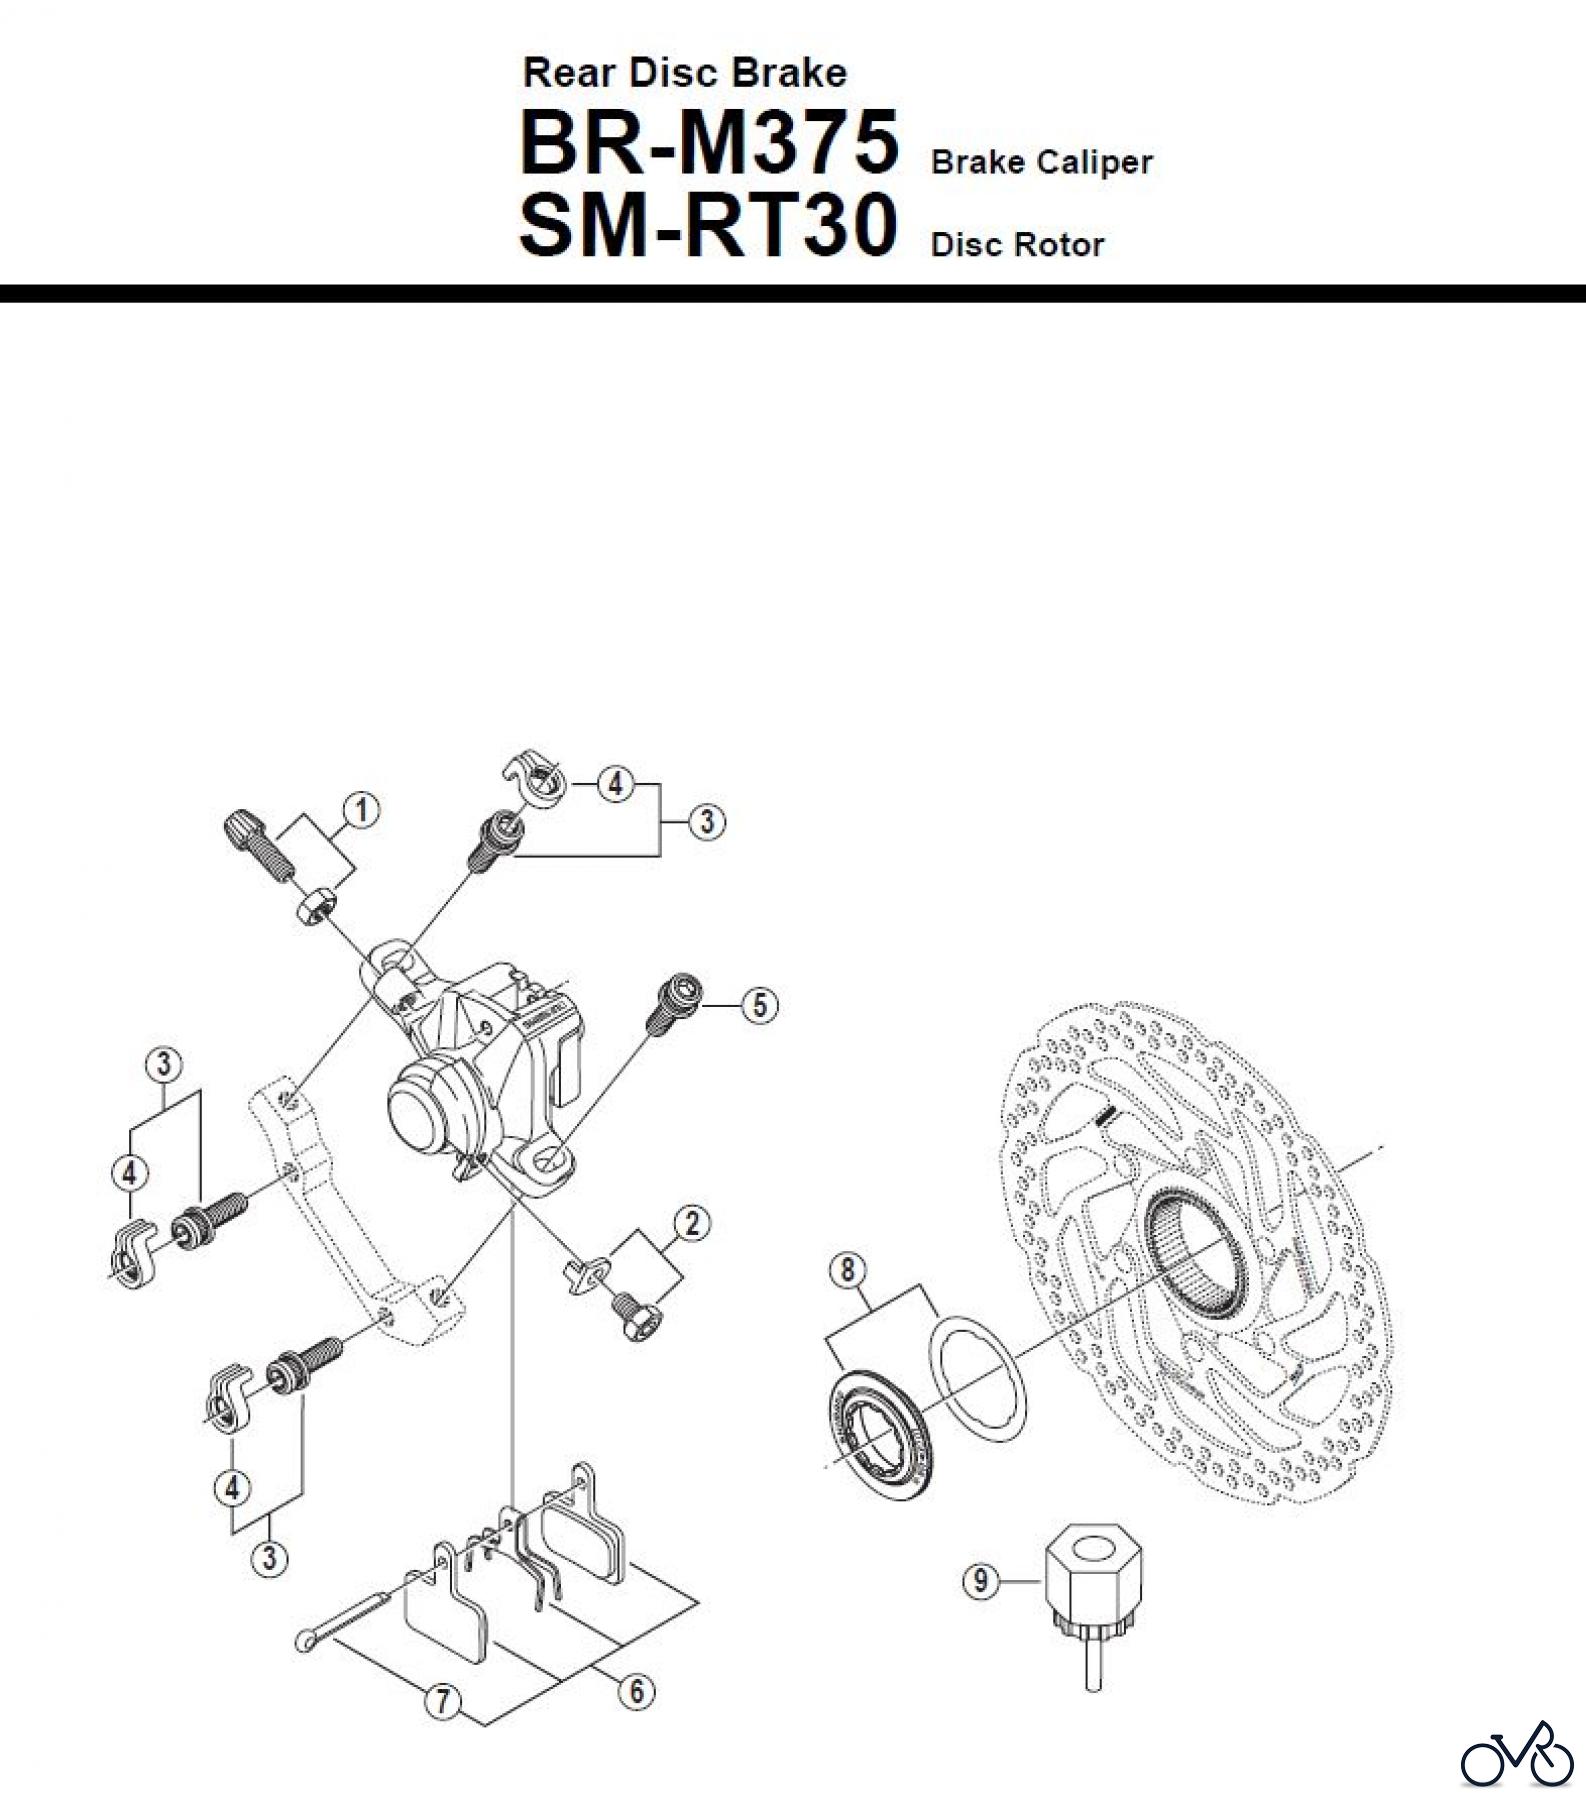  Shimano BR Brake - Bremse BR-M375 -R -3230 Rear Disc Brake